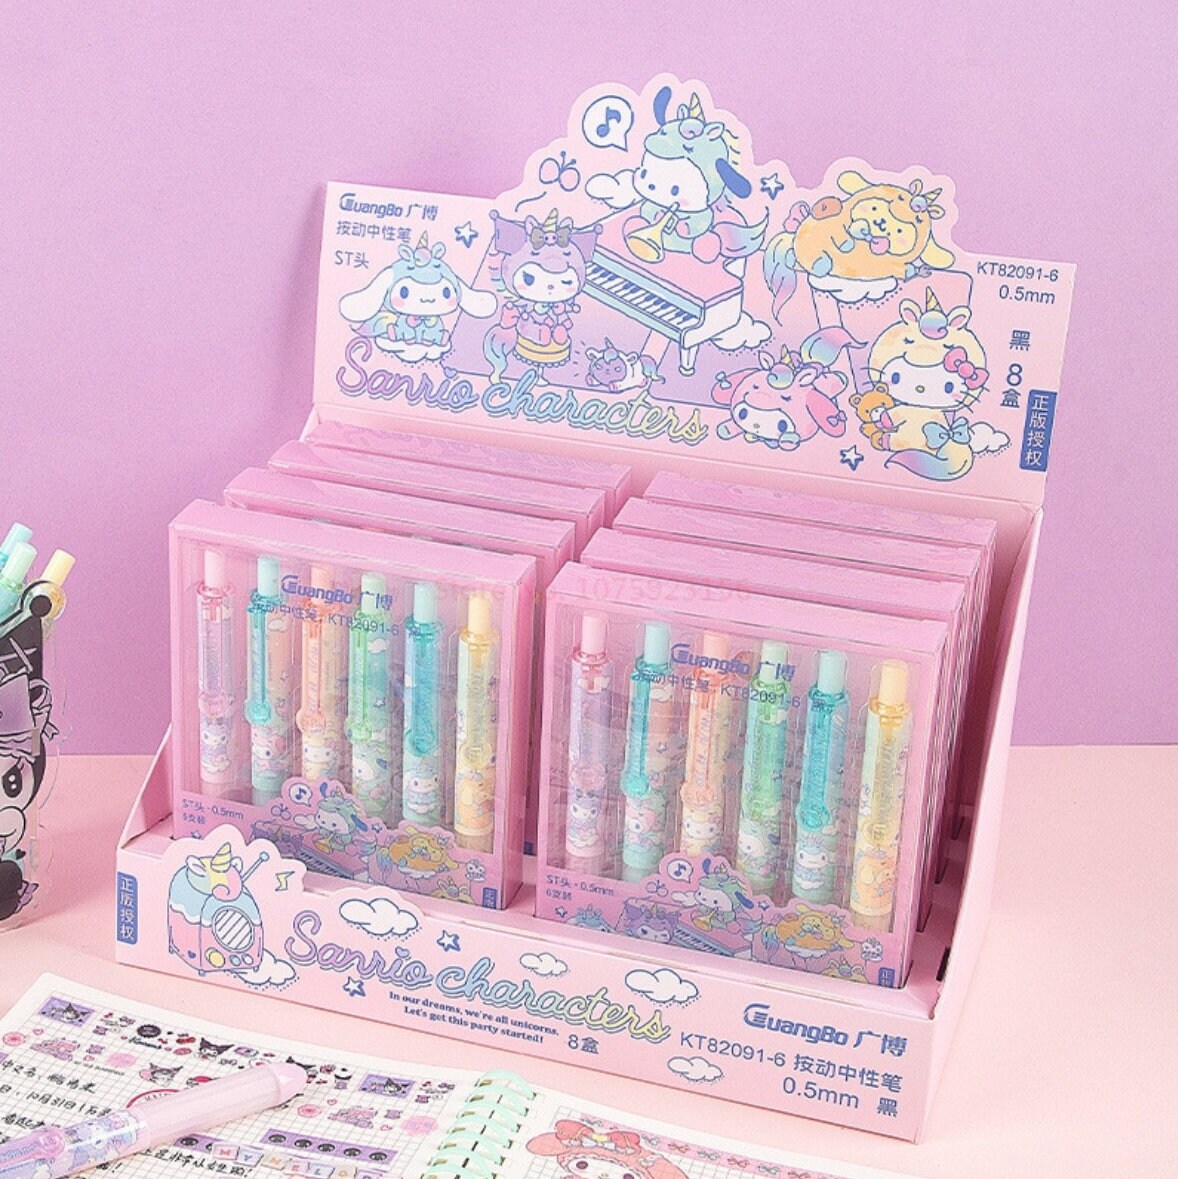 Unicorn Stationery Set For Kids-Kawaii Stationery Set|Stationery Box With  10 Color Unicorn Pen|Kawaii Pencils|Unicorn Pencil Box|Eraser|Sharpener And